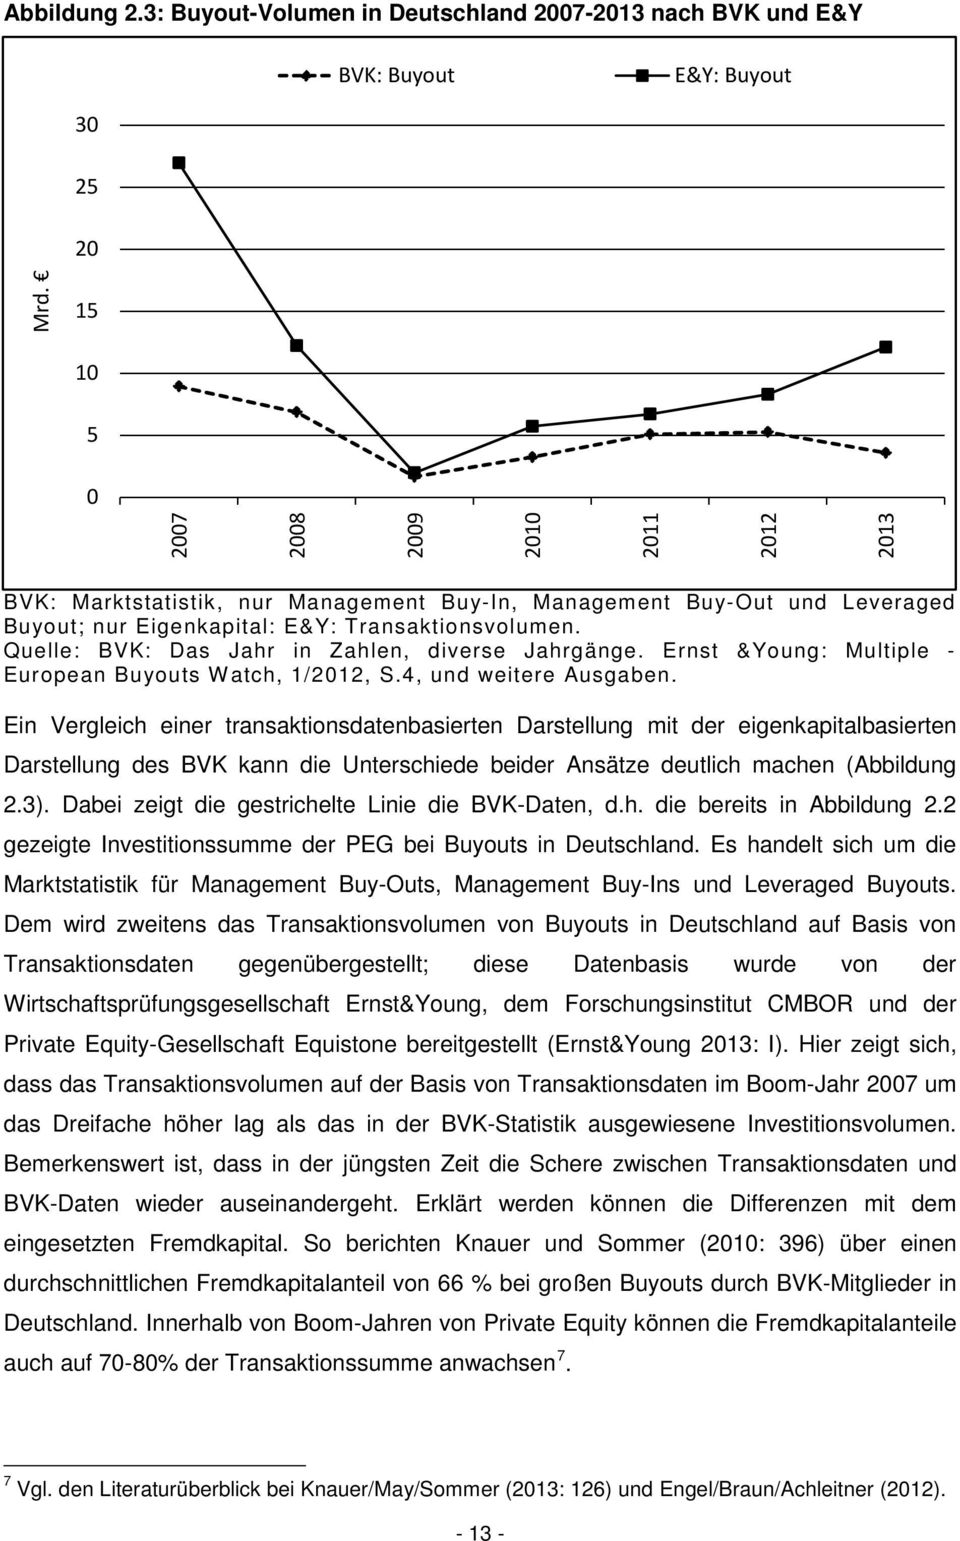 Quelle: BVK: Das Jahr in Zahlen, diverse Jahrgänge. Ernst &Young: Multiple - European Buyouts Watch, 1/2012, S.4, und weitere Ausgaben.